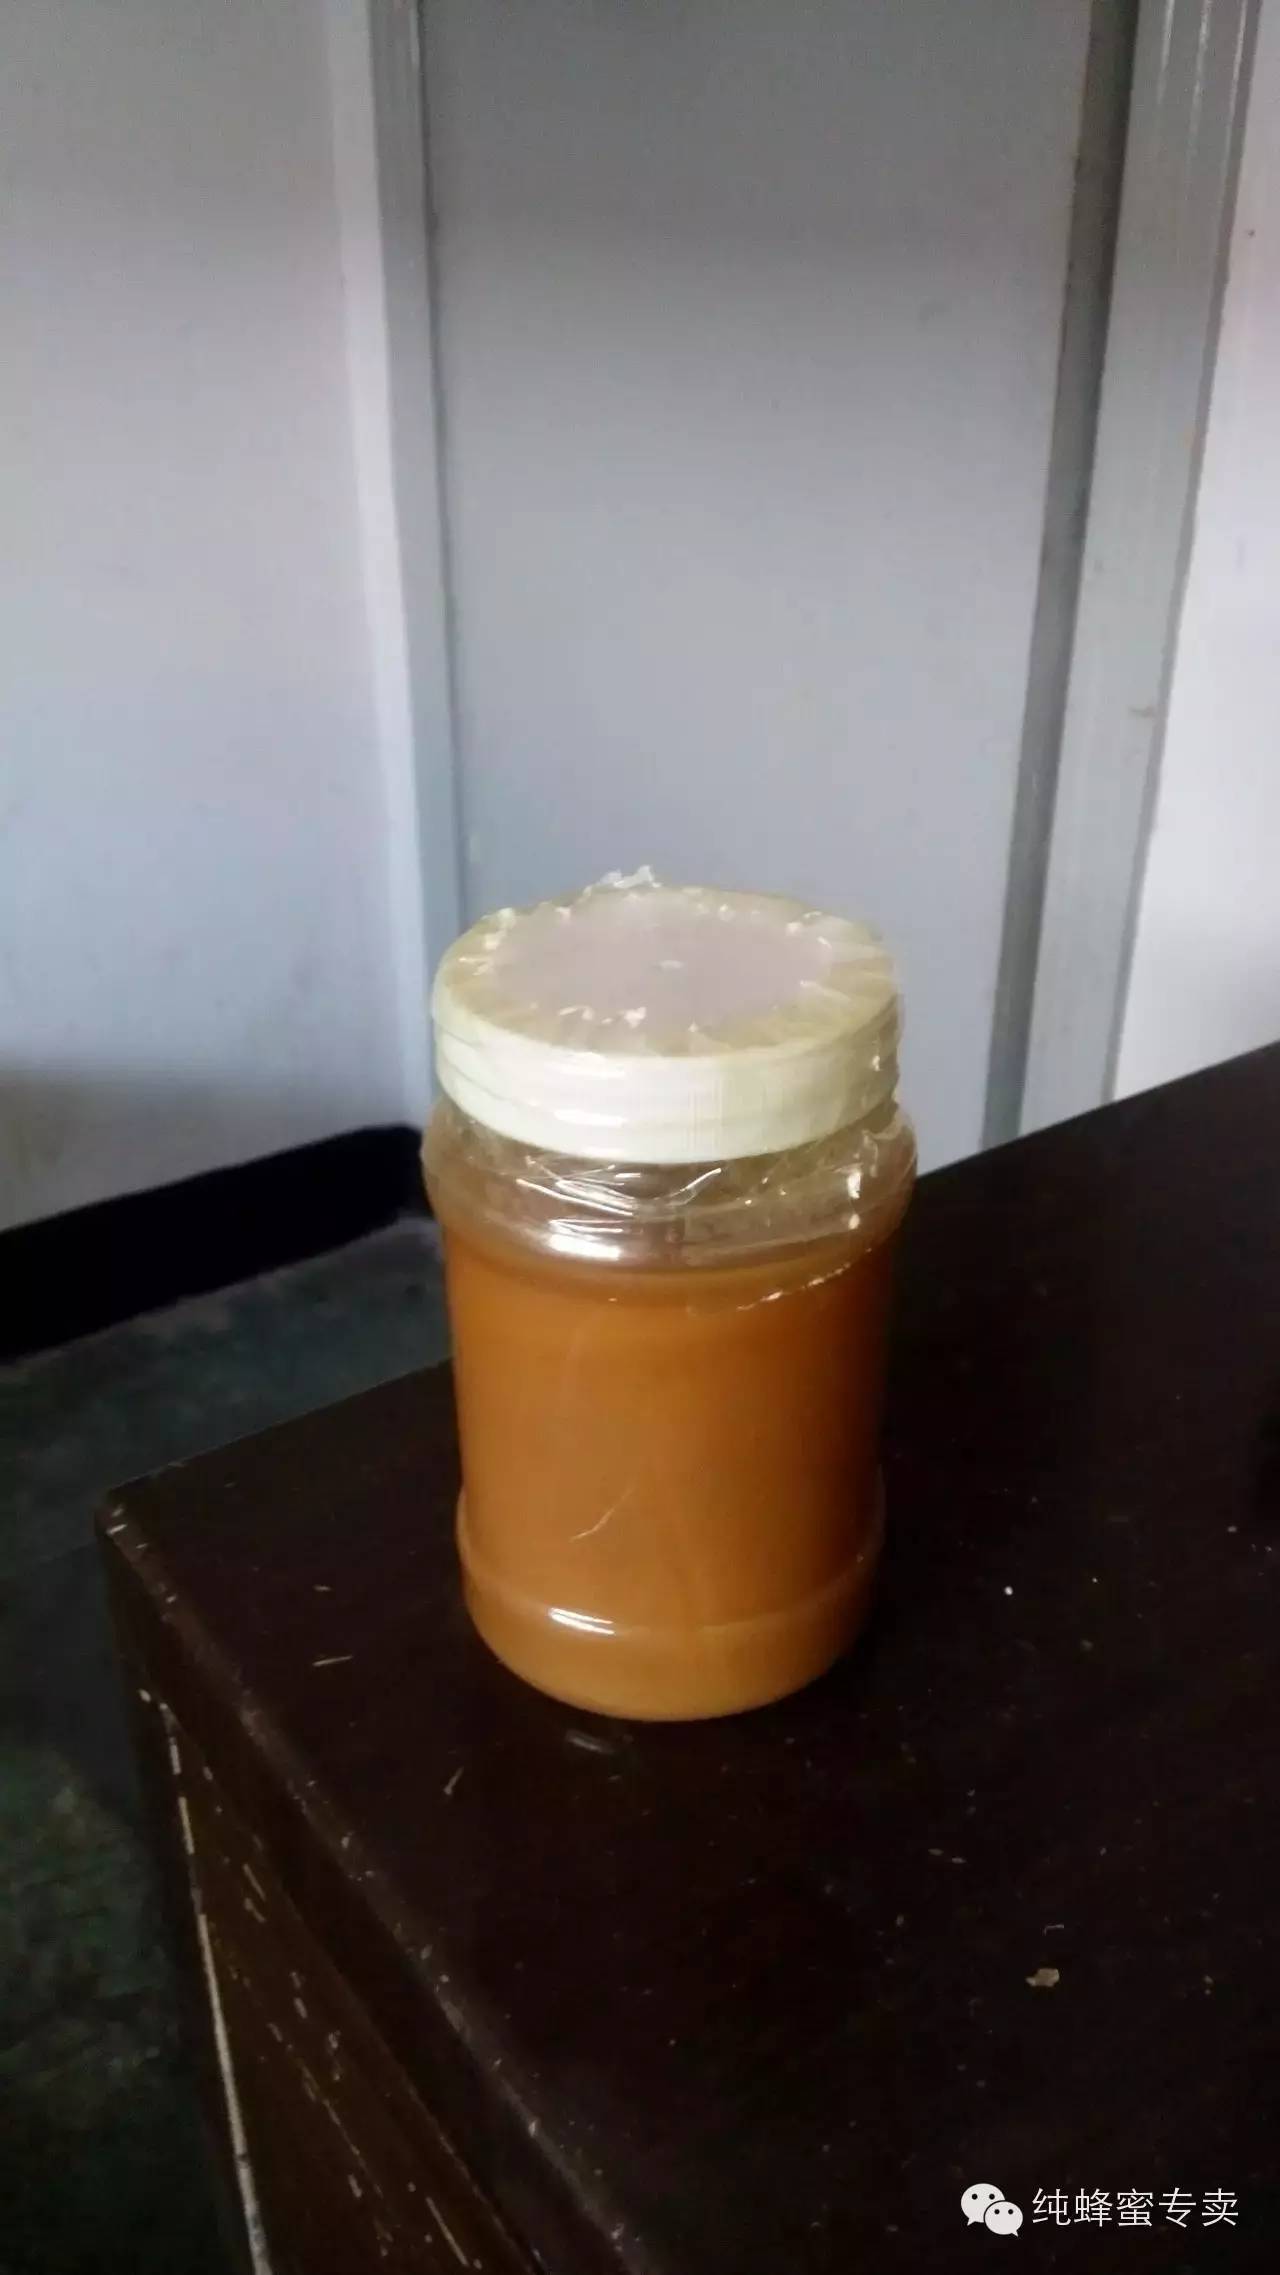 蜂蜜可以放冰箱吗 蜂蜜如何美容 西红柿和蜂蜜做面膜 天然蜂蜜多少钱一斤 什么时间喝蜂蜜好